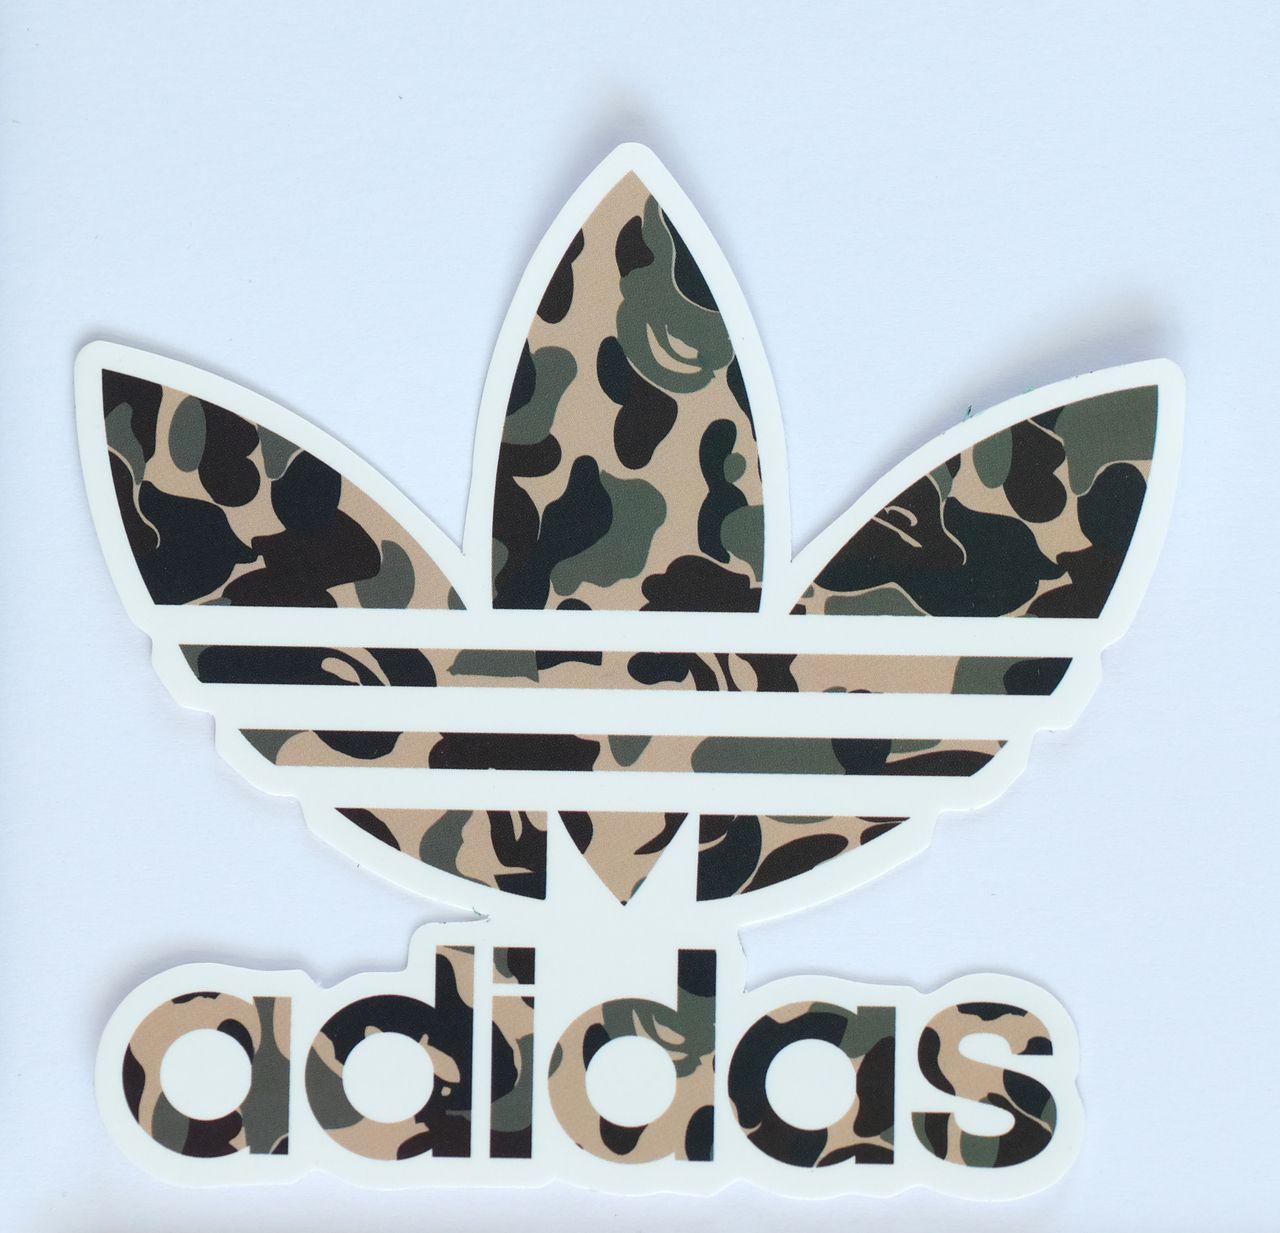 Gray Camo Adidas Logo - 2639 adidas Originals x a bathing ape bape green camo 8x7cm Decal ...